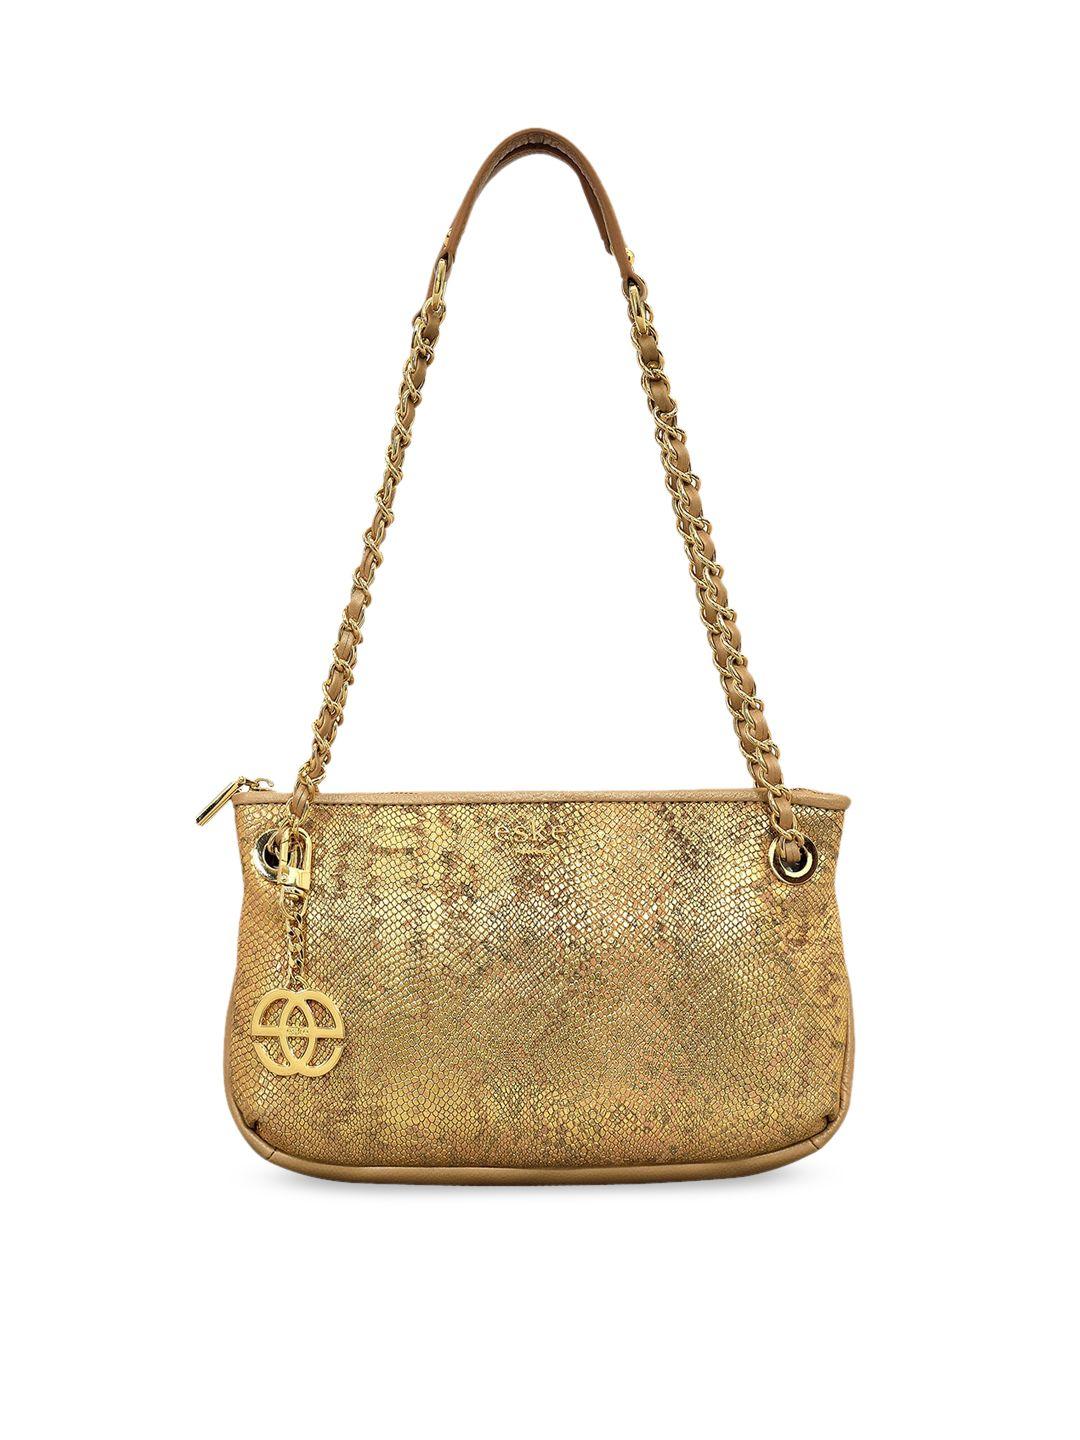 eske gold textured leather structured shoulder bag